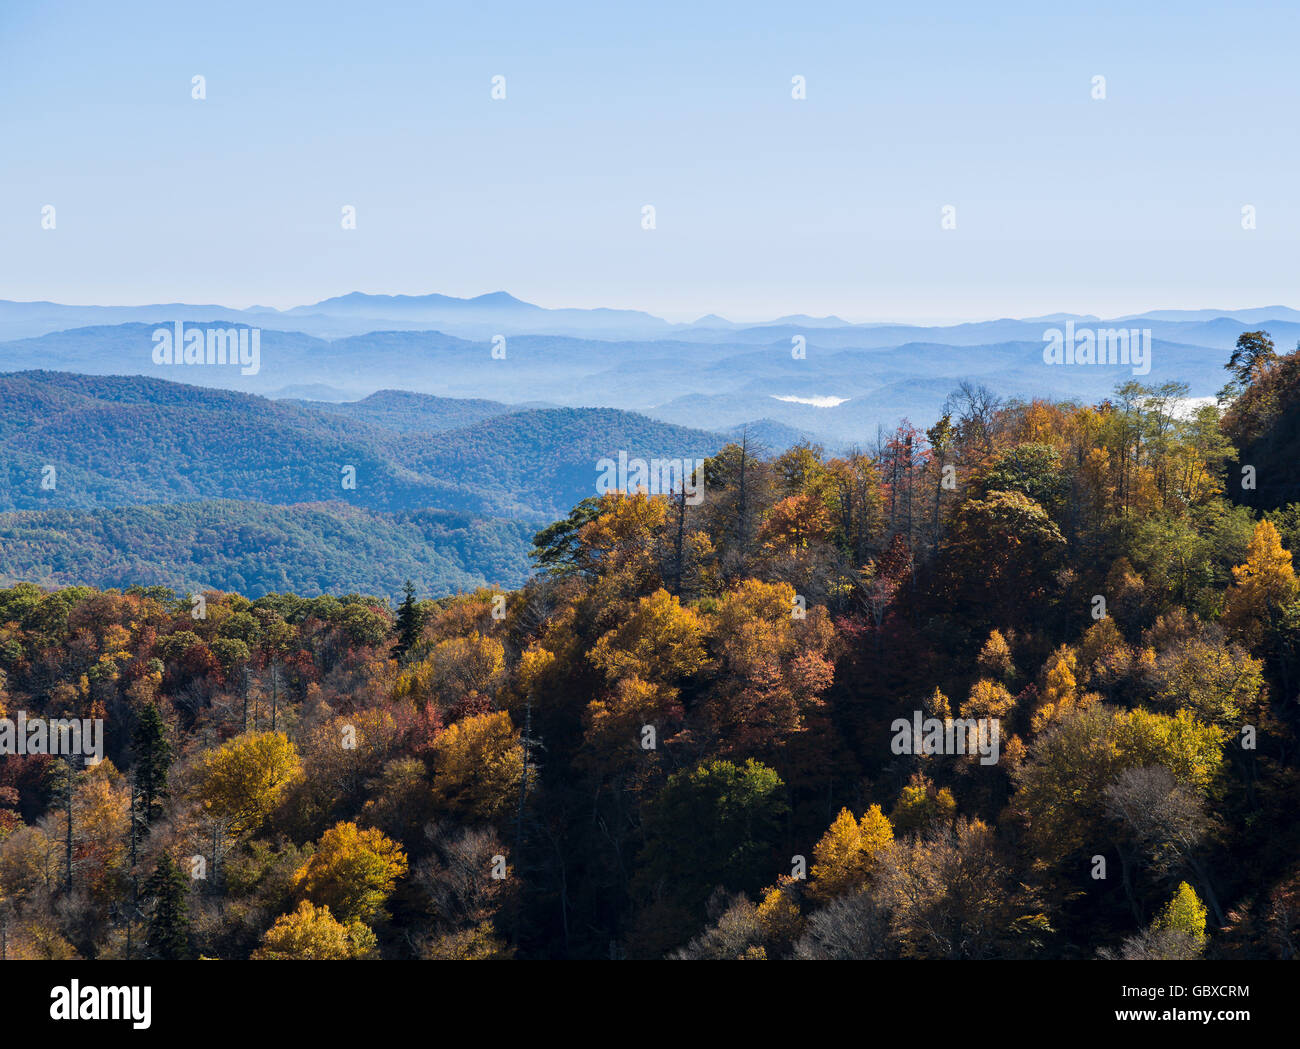 Vue panoramique donnant sur le Blue Ridge Parkway road, Asheville, NC, USA Banque D'Images